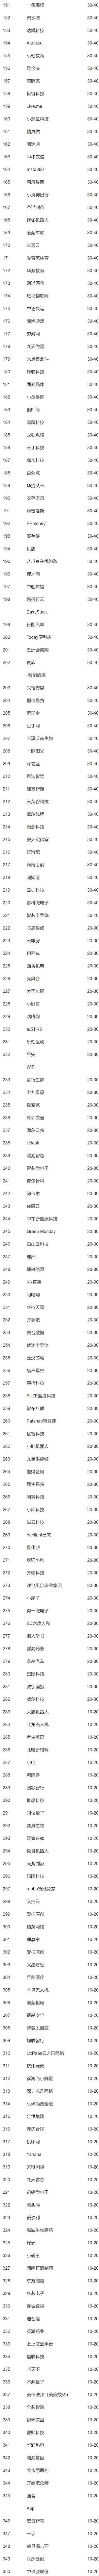 新知达人, 2021中国隐形独角兽500强最全榜单！